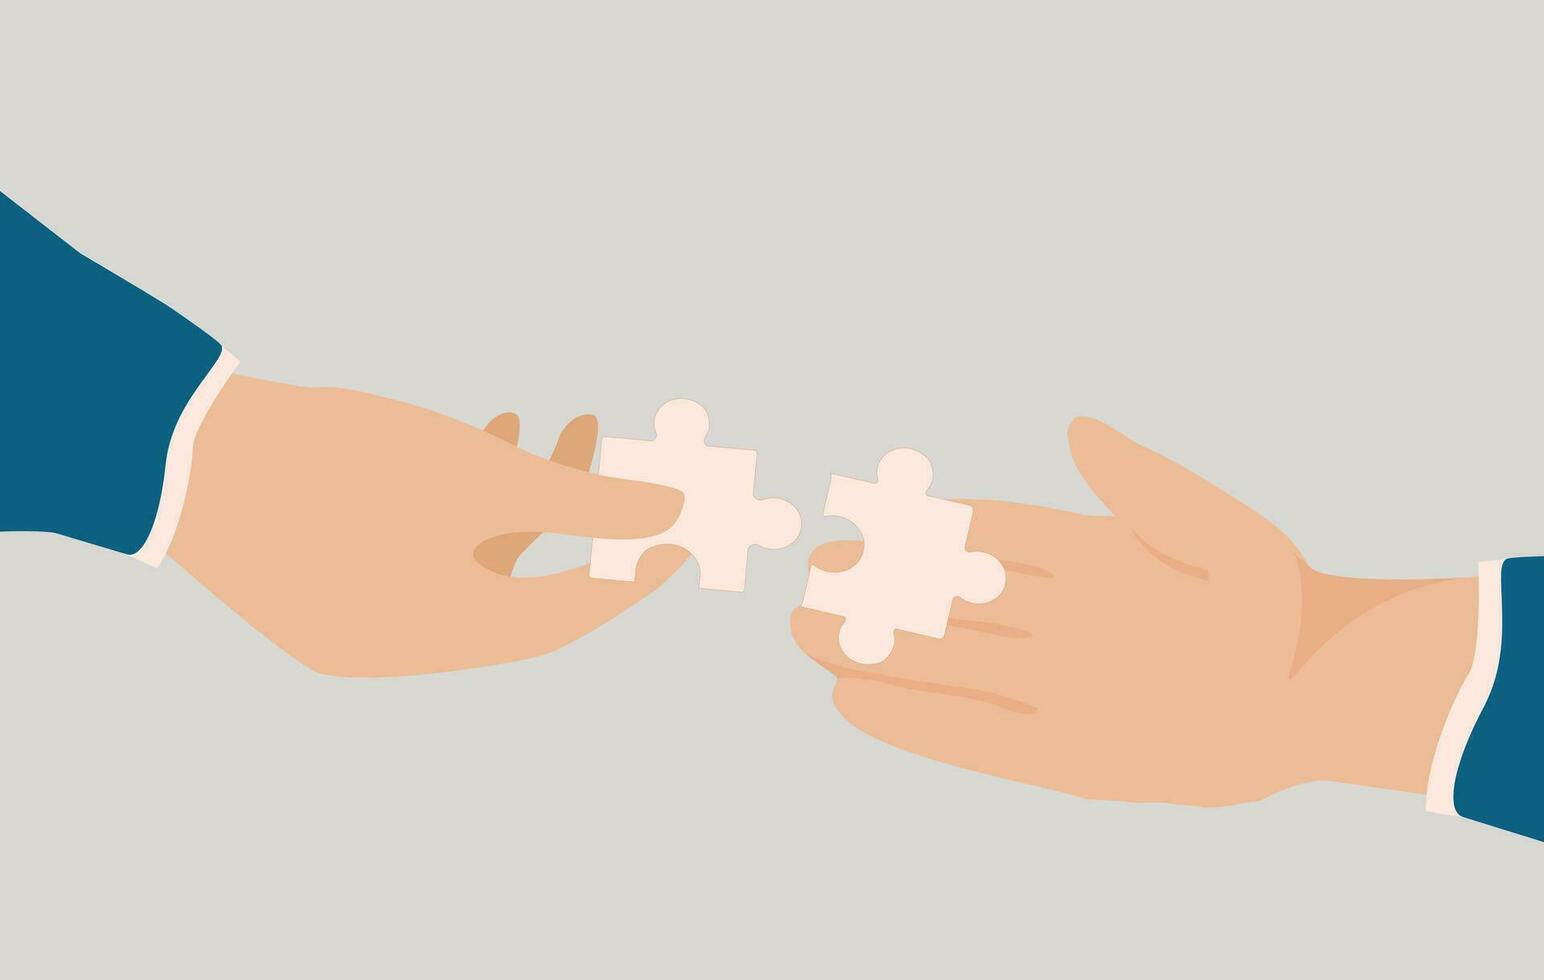 dois humano mãos conectar dois partes do quebra-cabeças enigma junto. ilustração do inovação, criação e o negócio soluções ou ideia. conceito do equipe espírito, trabalho em equipe e colaboração. vetor estoque